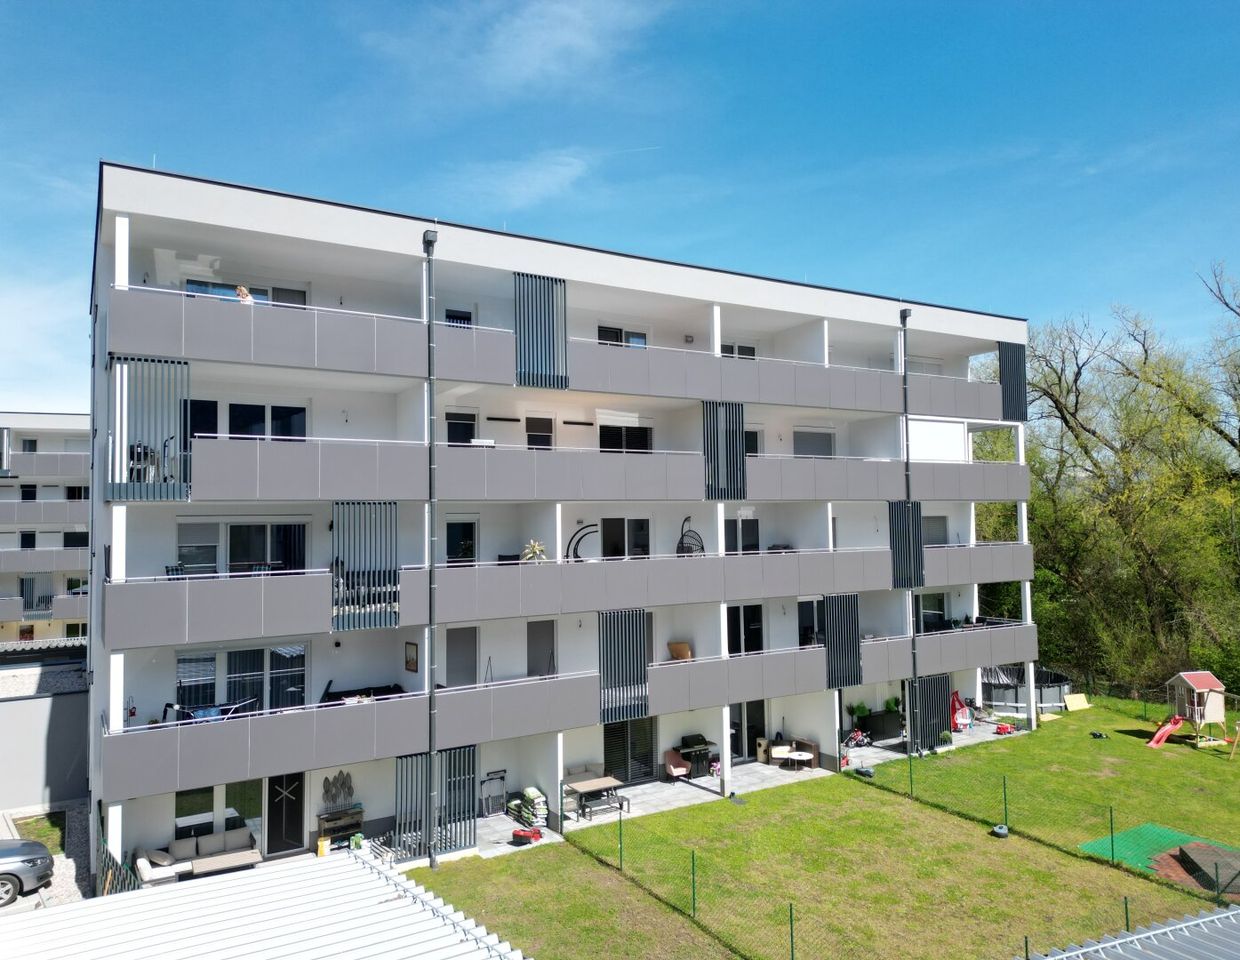 Begehrte & elegante Neubauwohnung in Grünlage mit riesigem 18,5qm Balkon, Fußbodenheizung & Badewanne und sonniger Südostlage in Ebenthal bei Klagenfurt